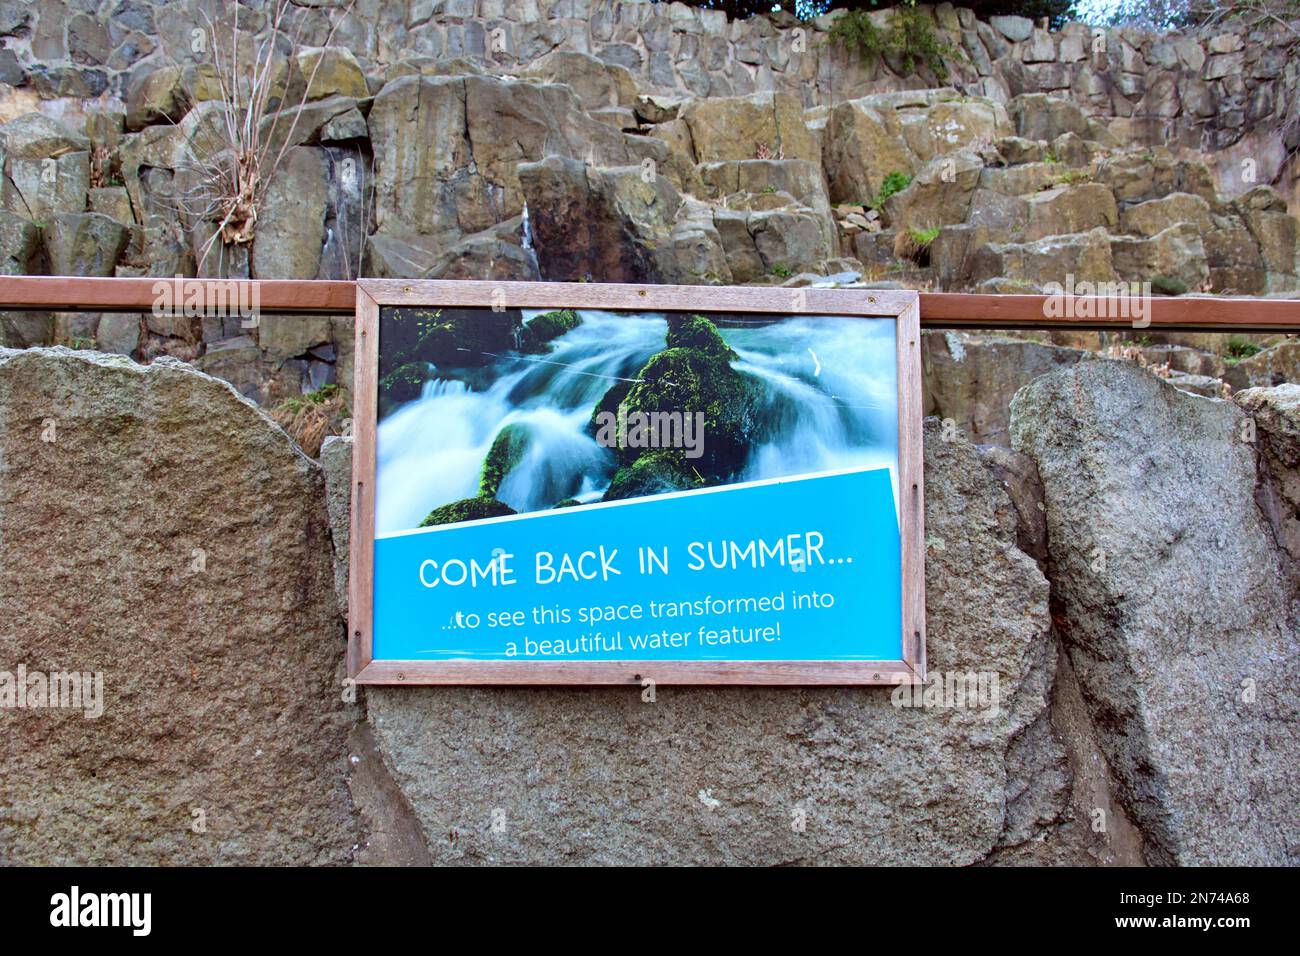 Kommen Sie zurück im Sommer edinburgh Zoo Wintersaison Schild, auf dem steht, dass das Wasserspiel dann an ist Stockfoto